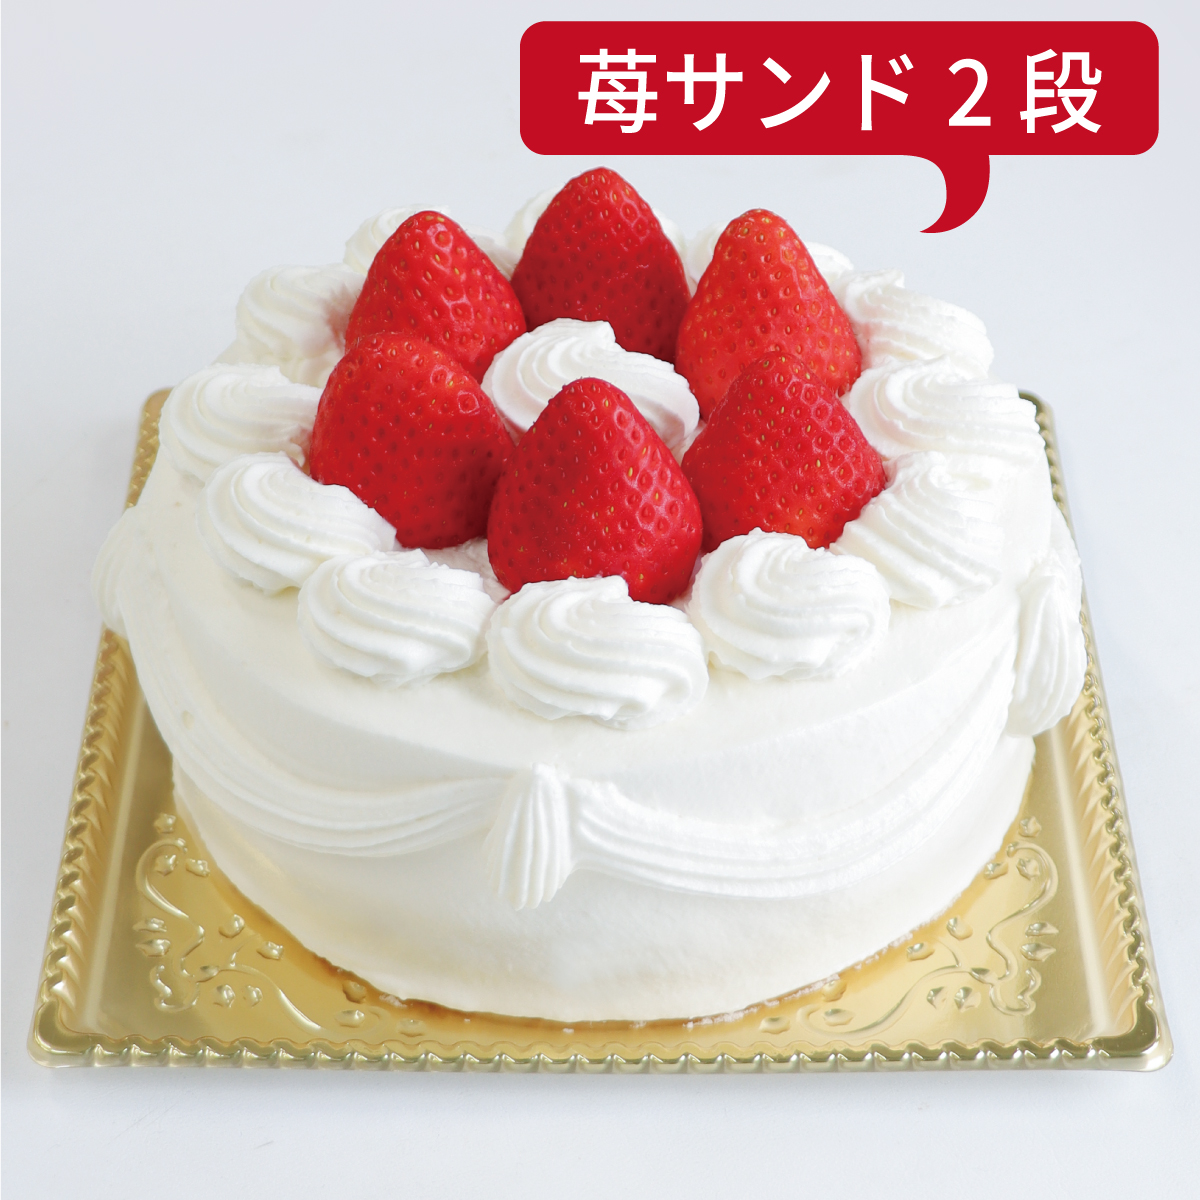 【ダブル】いちごデコレーションケーキ<24cm>